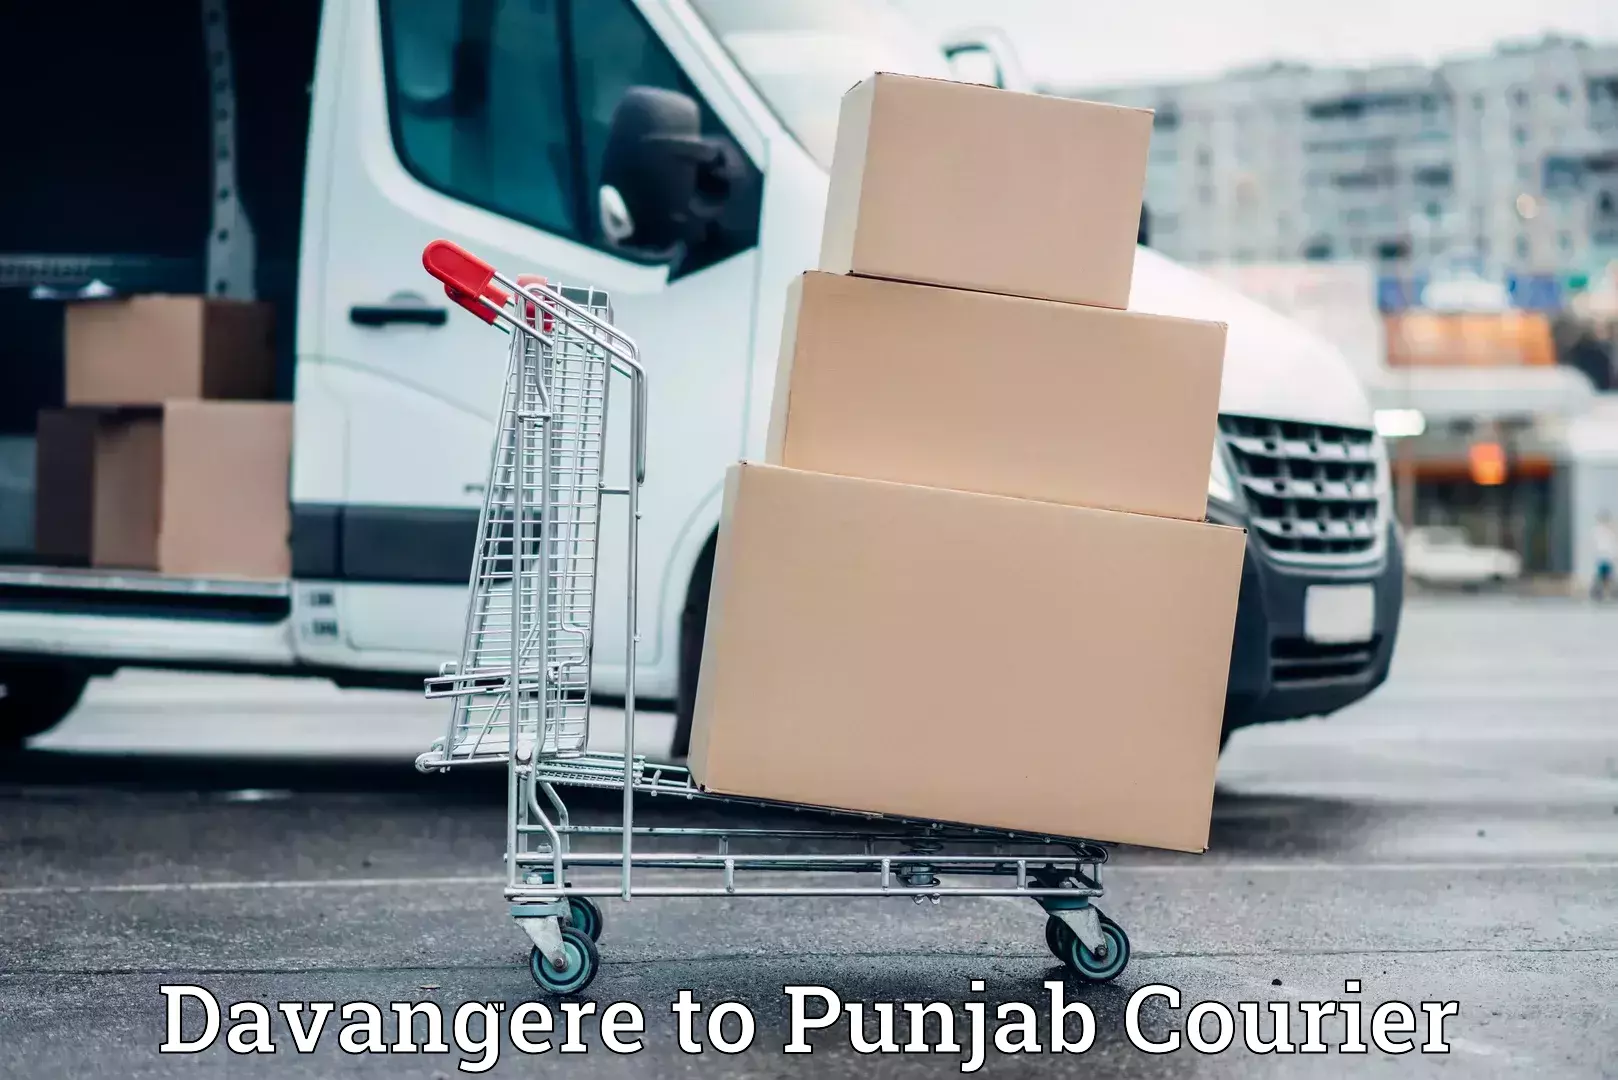 Stress-free moving Davangere to Punjab